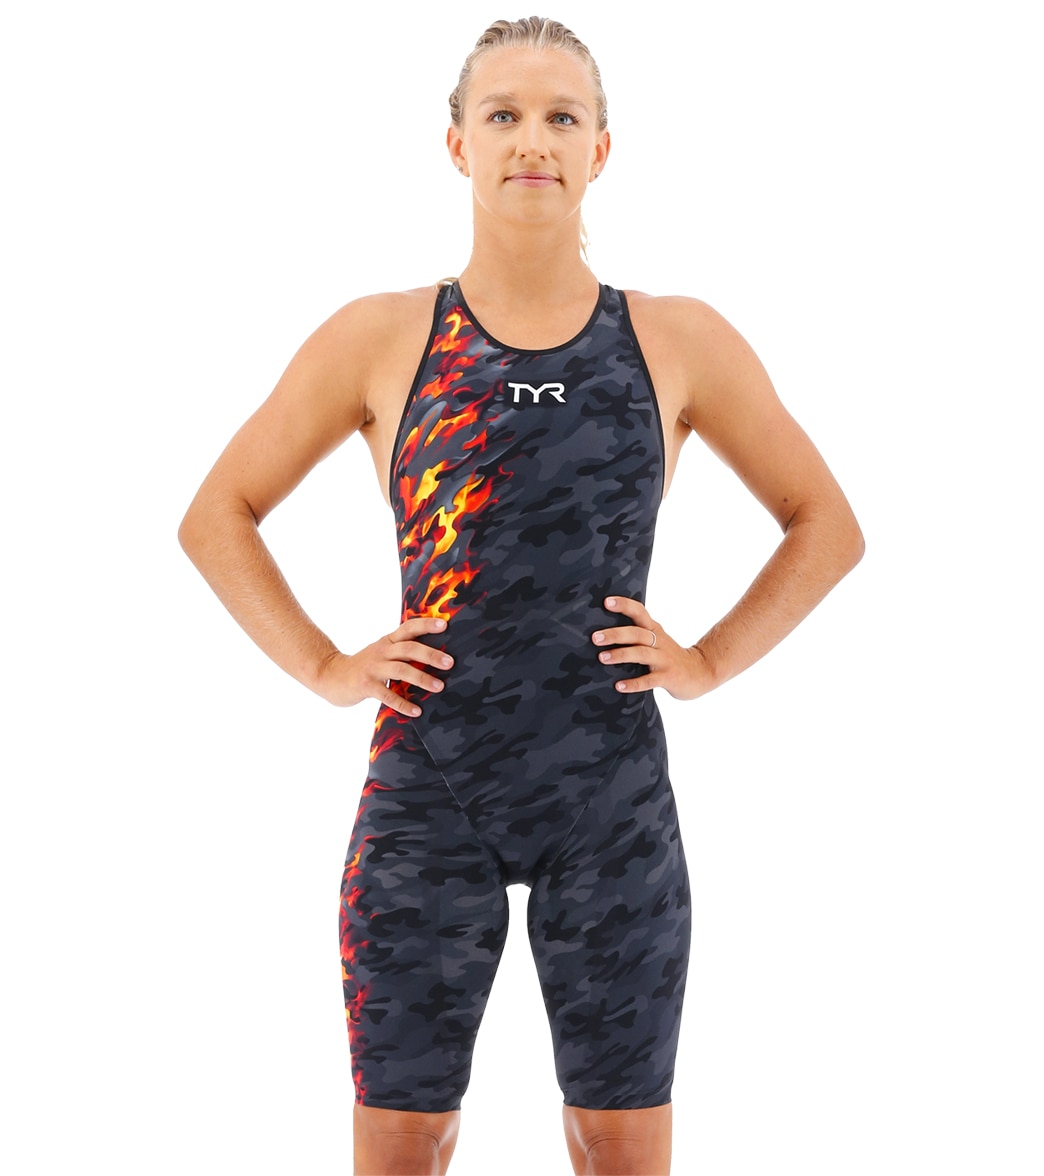 TYR Women's Venzo Camo Closed Back Tech Suit Swimsuit - Fire 23 - Swimoutlet.com